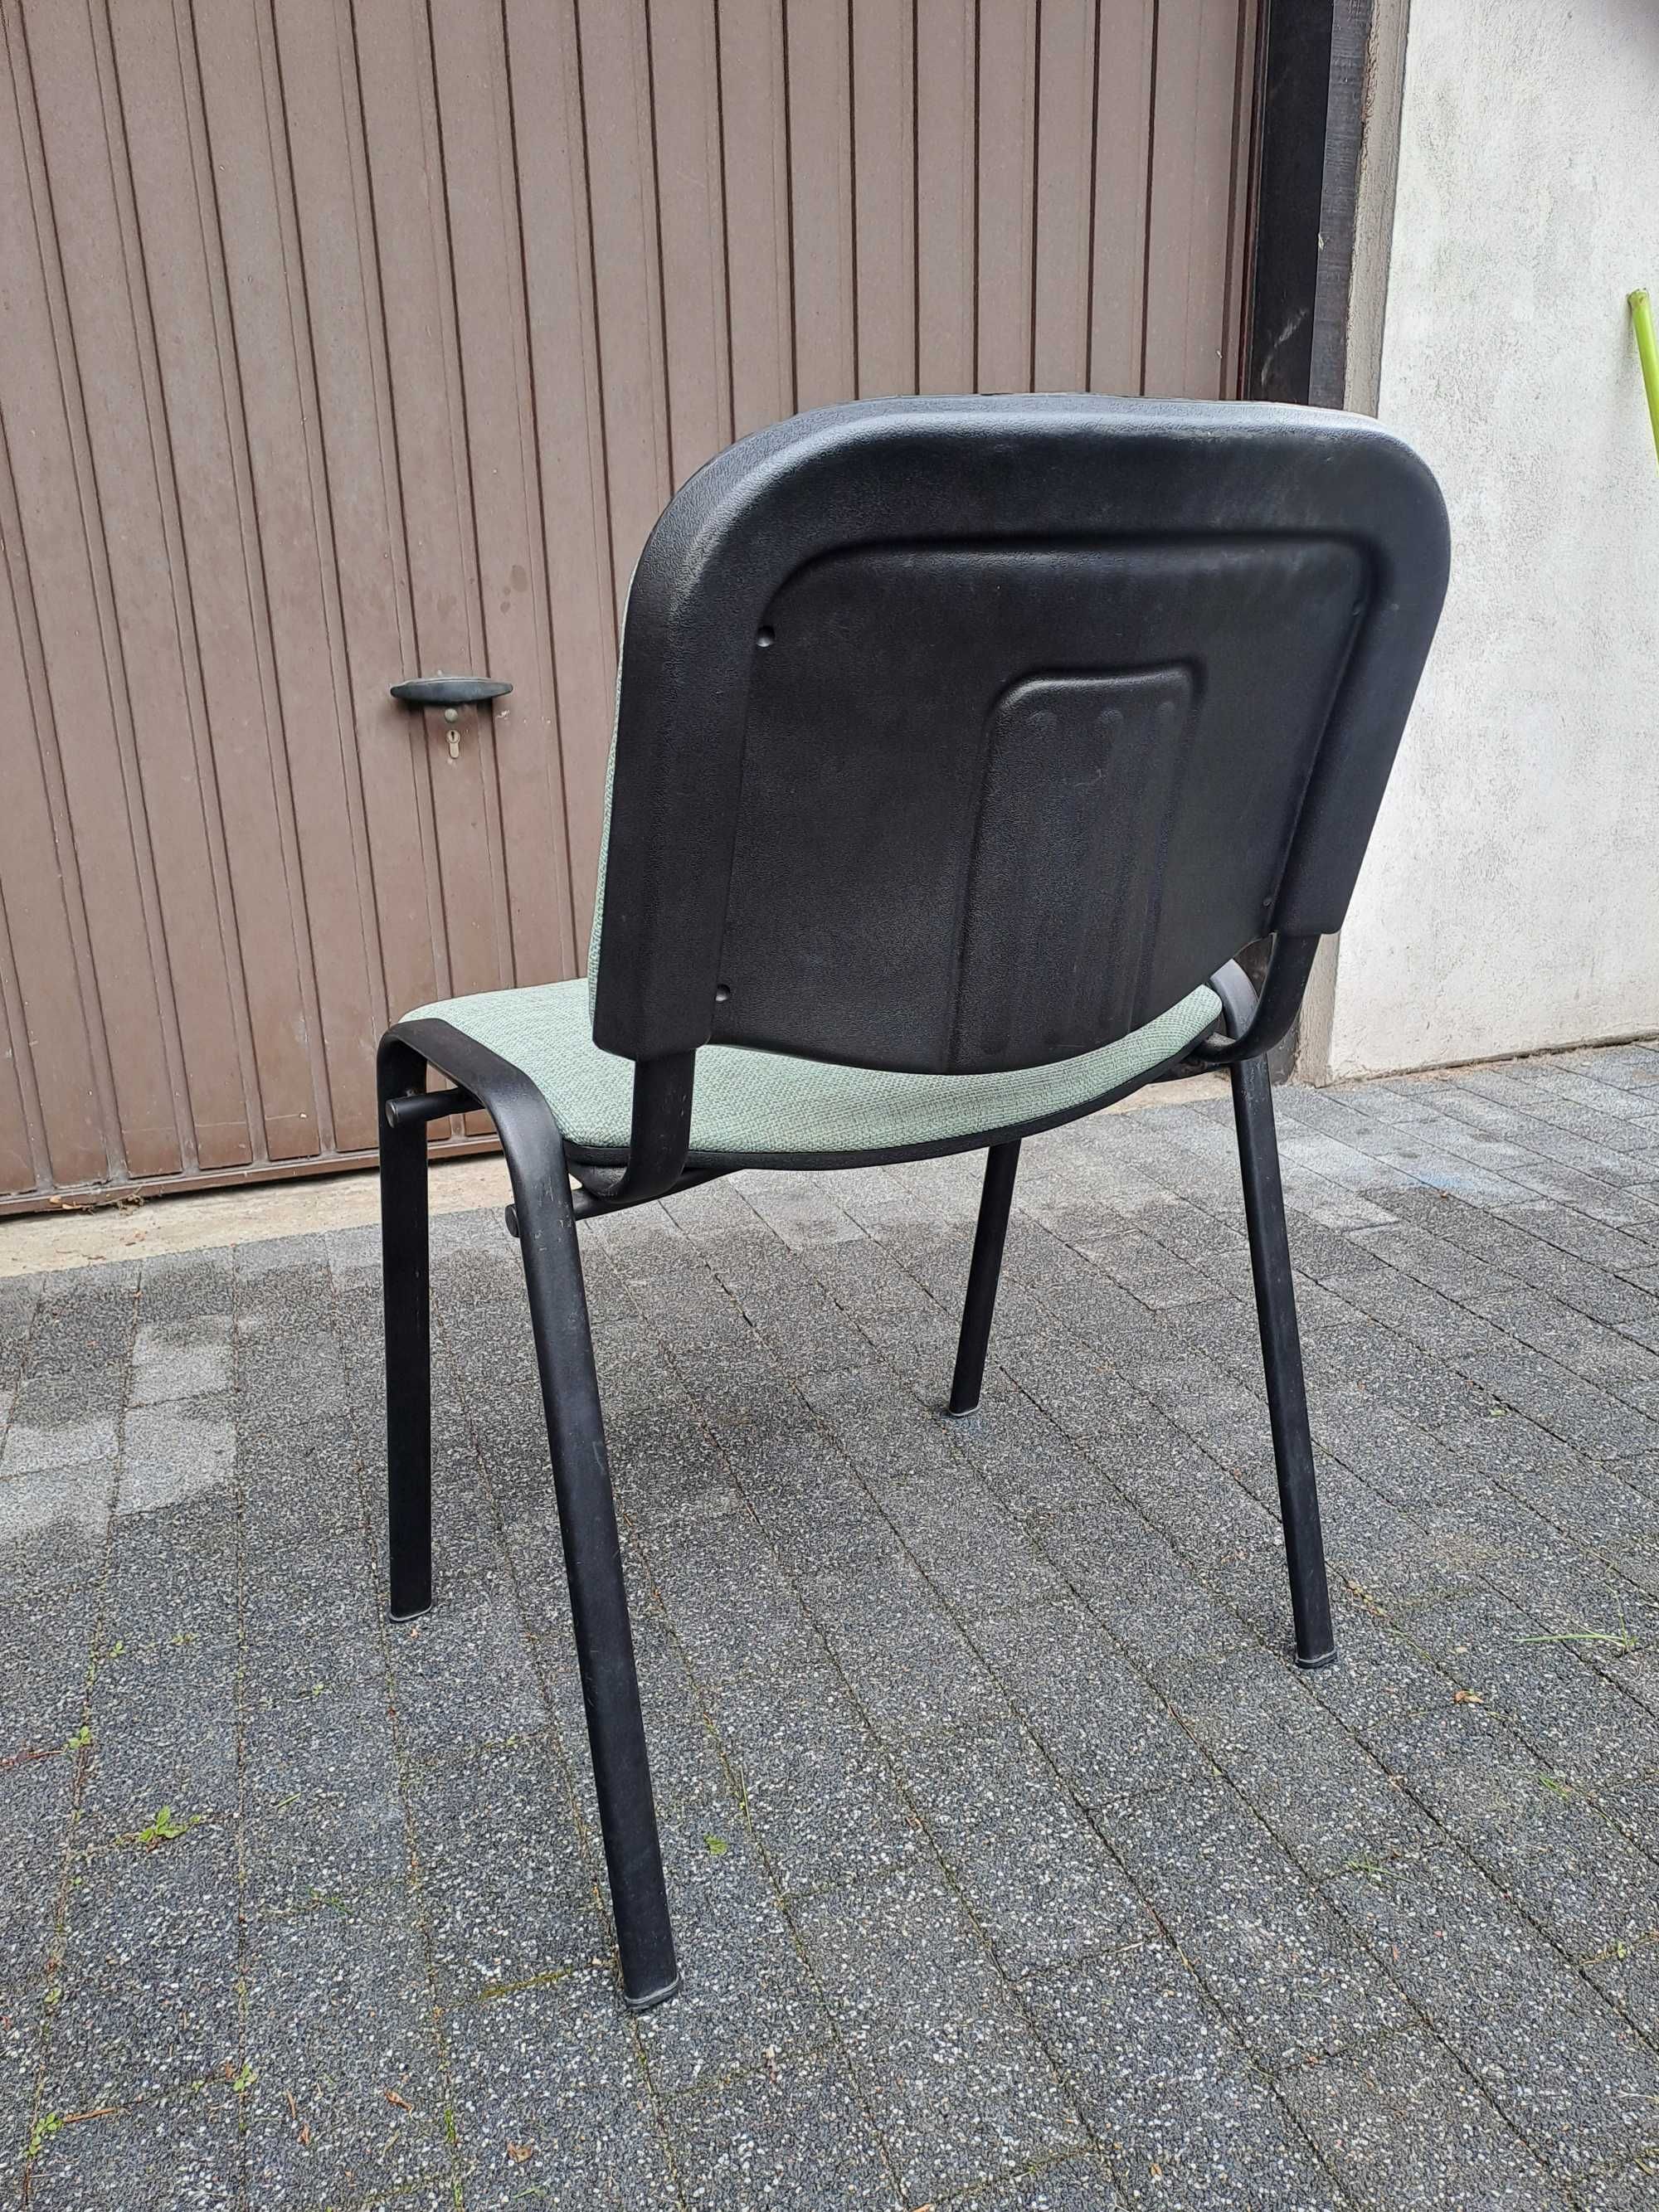 Krzesło wyściełane w stanie idealnym.